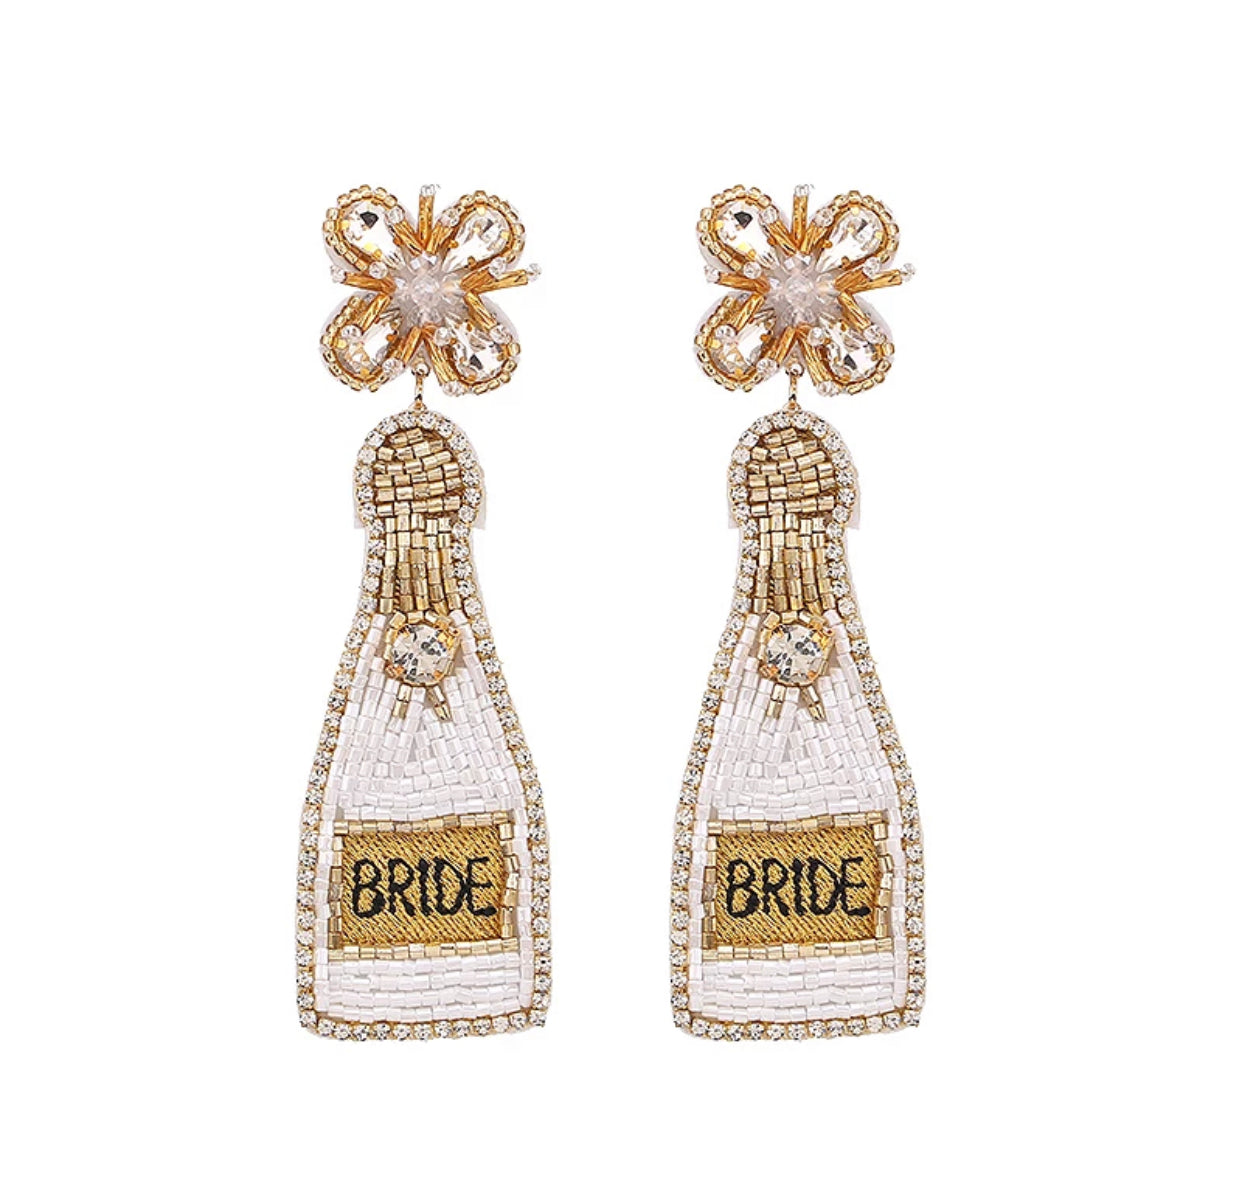 Beaded Bridal Shower Earrings